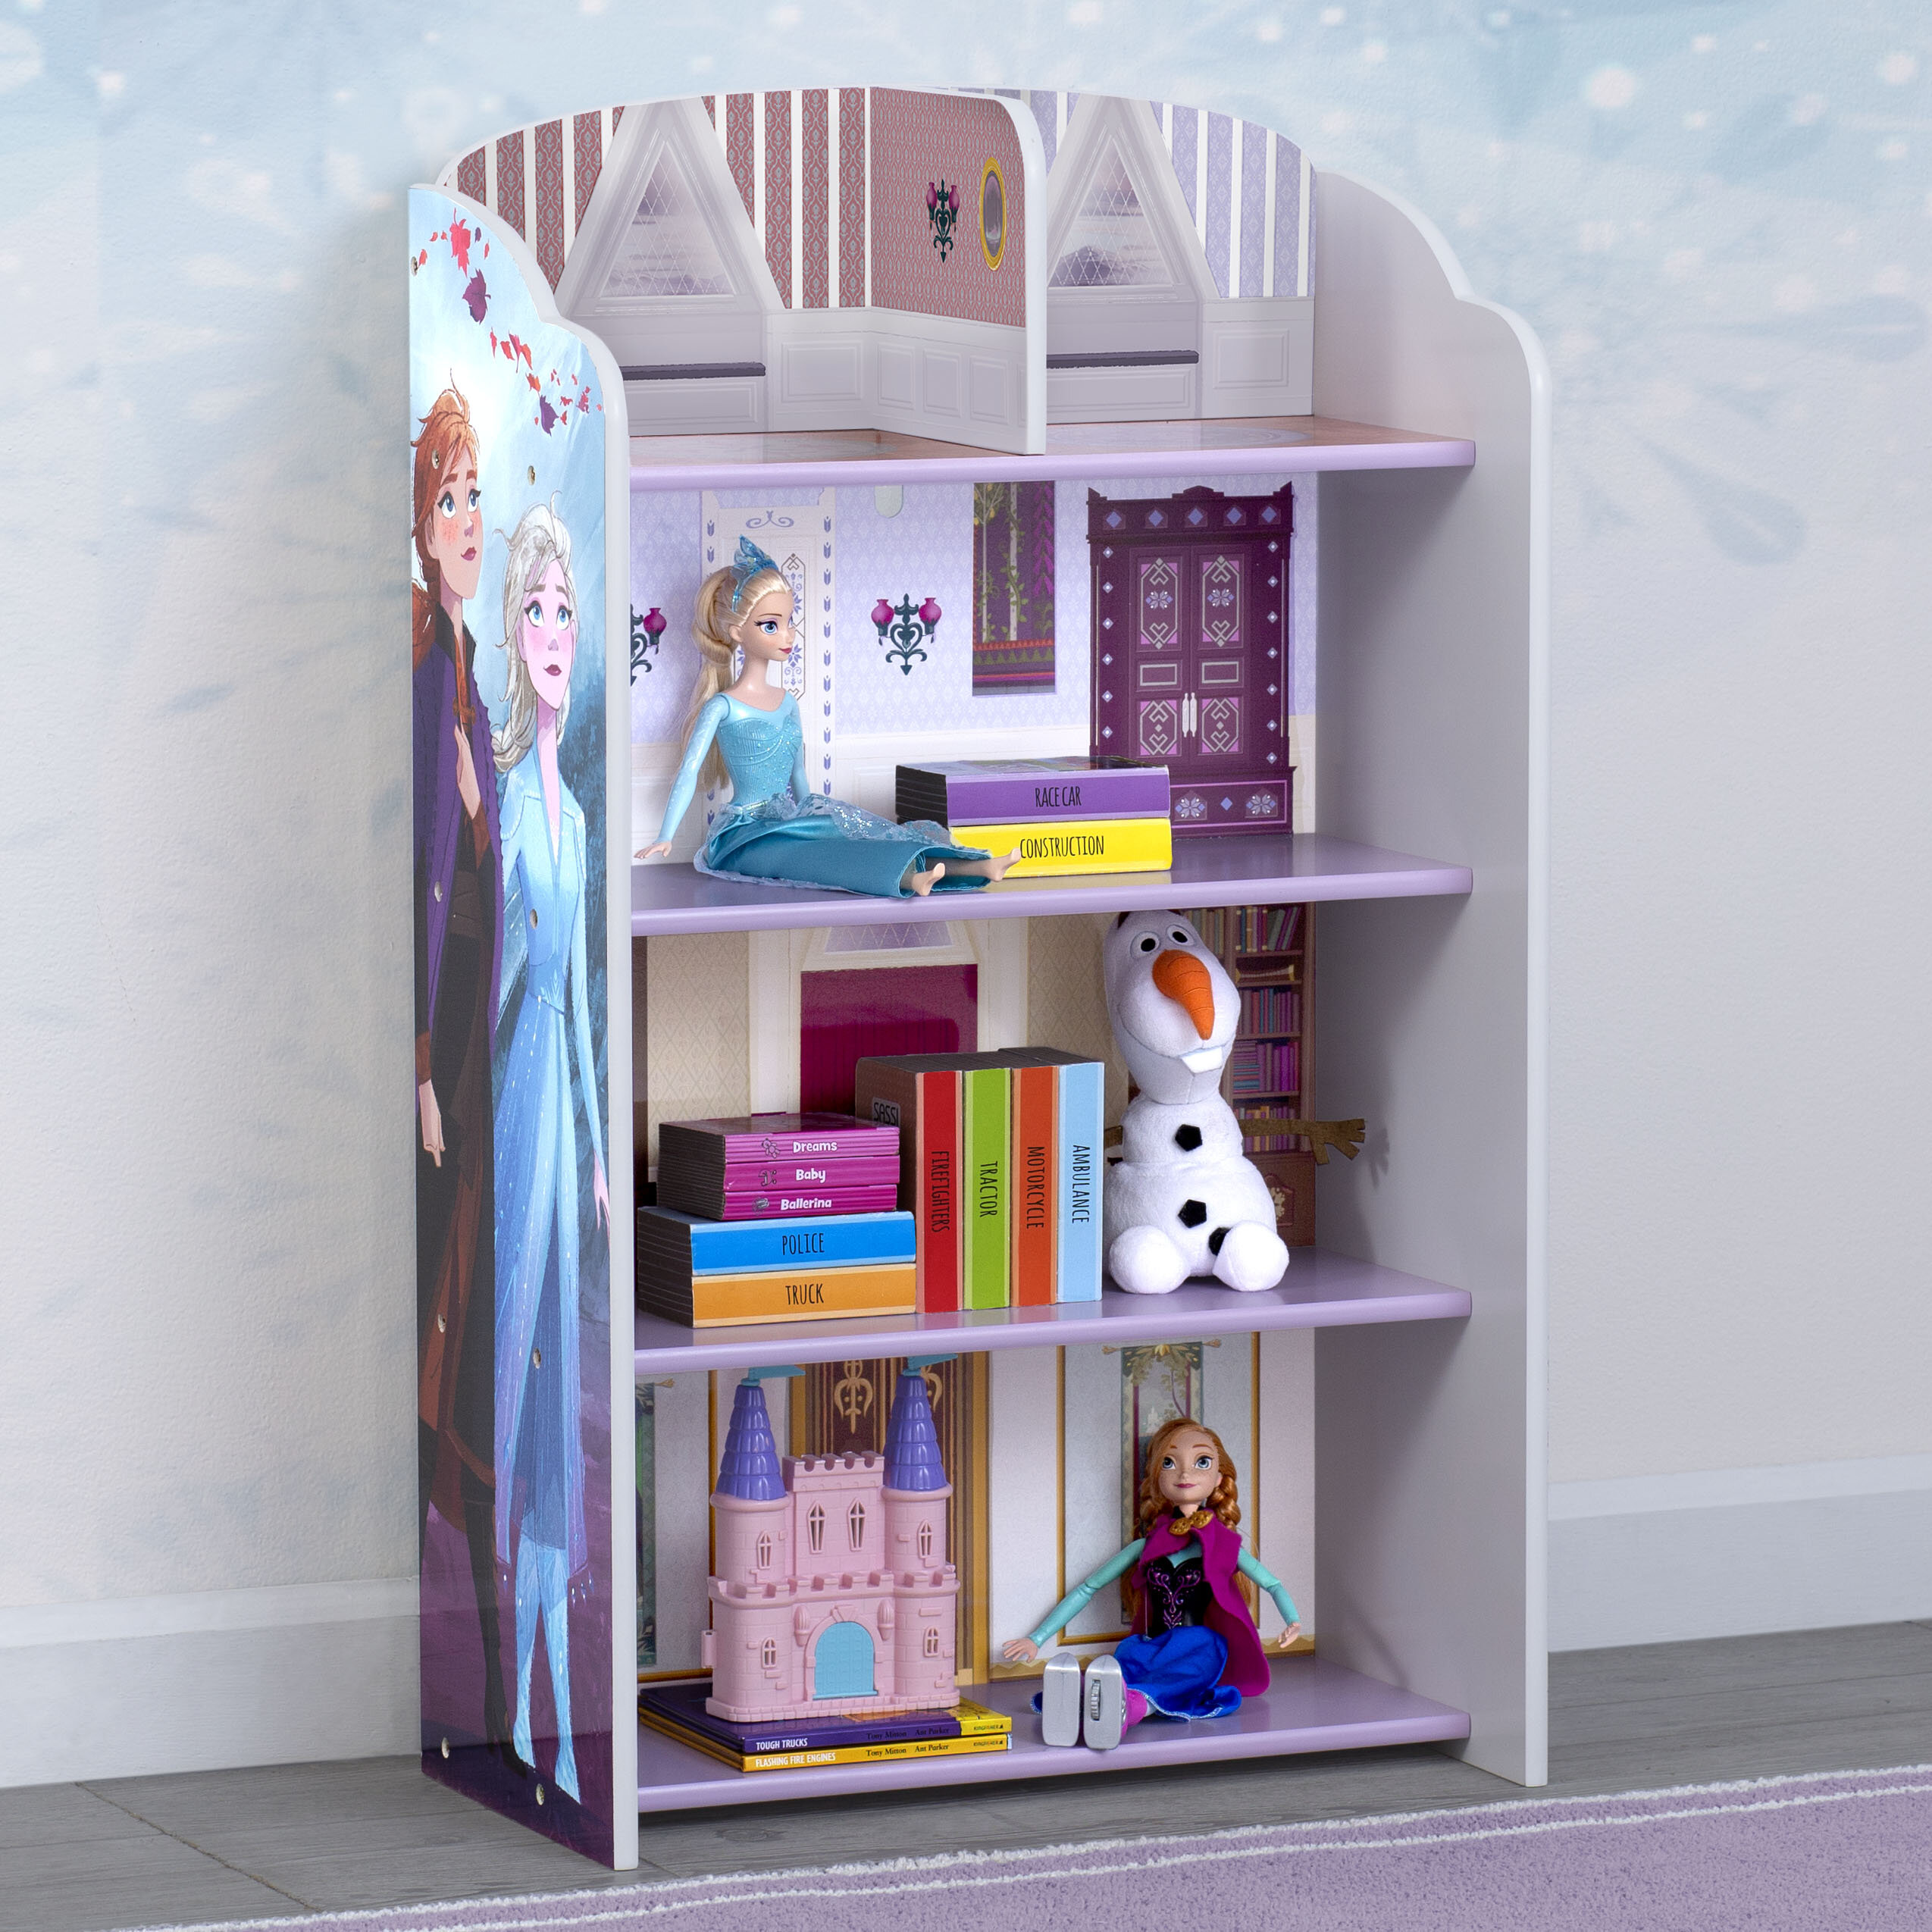 Girls Toy Box Elza Frozen Organizer Kids Bedroom Storage Bin Wood Furniture New